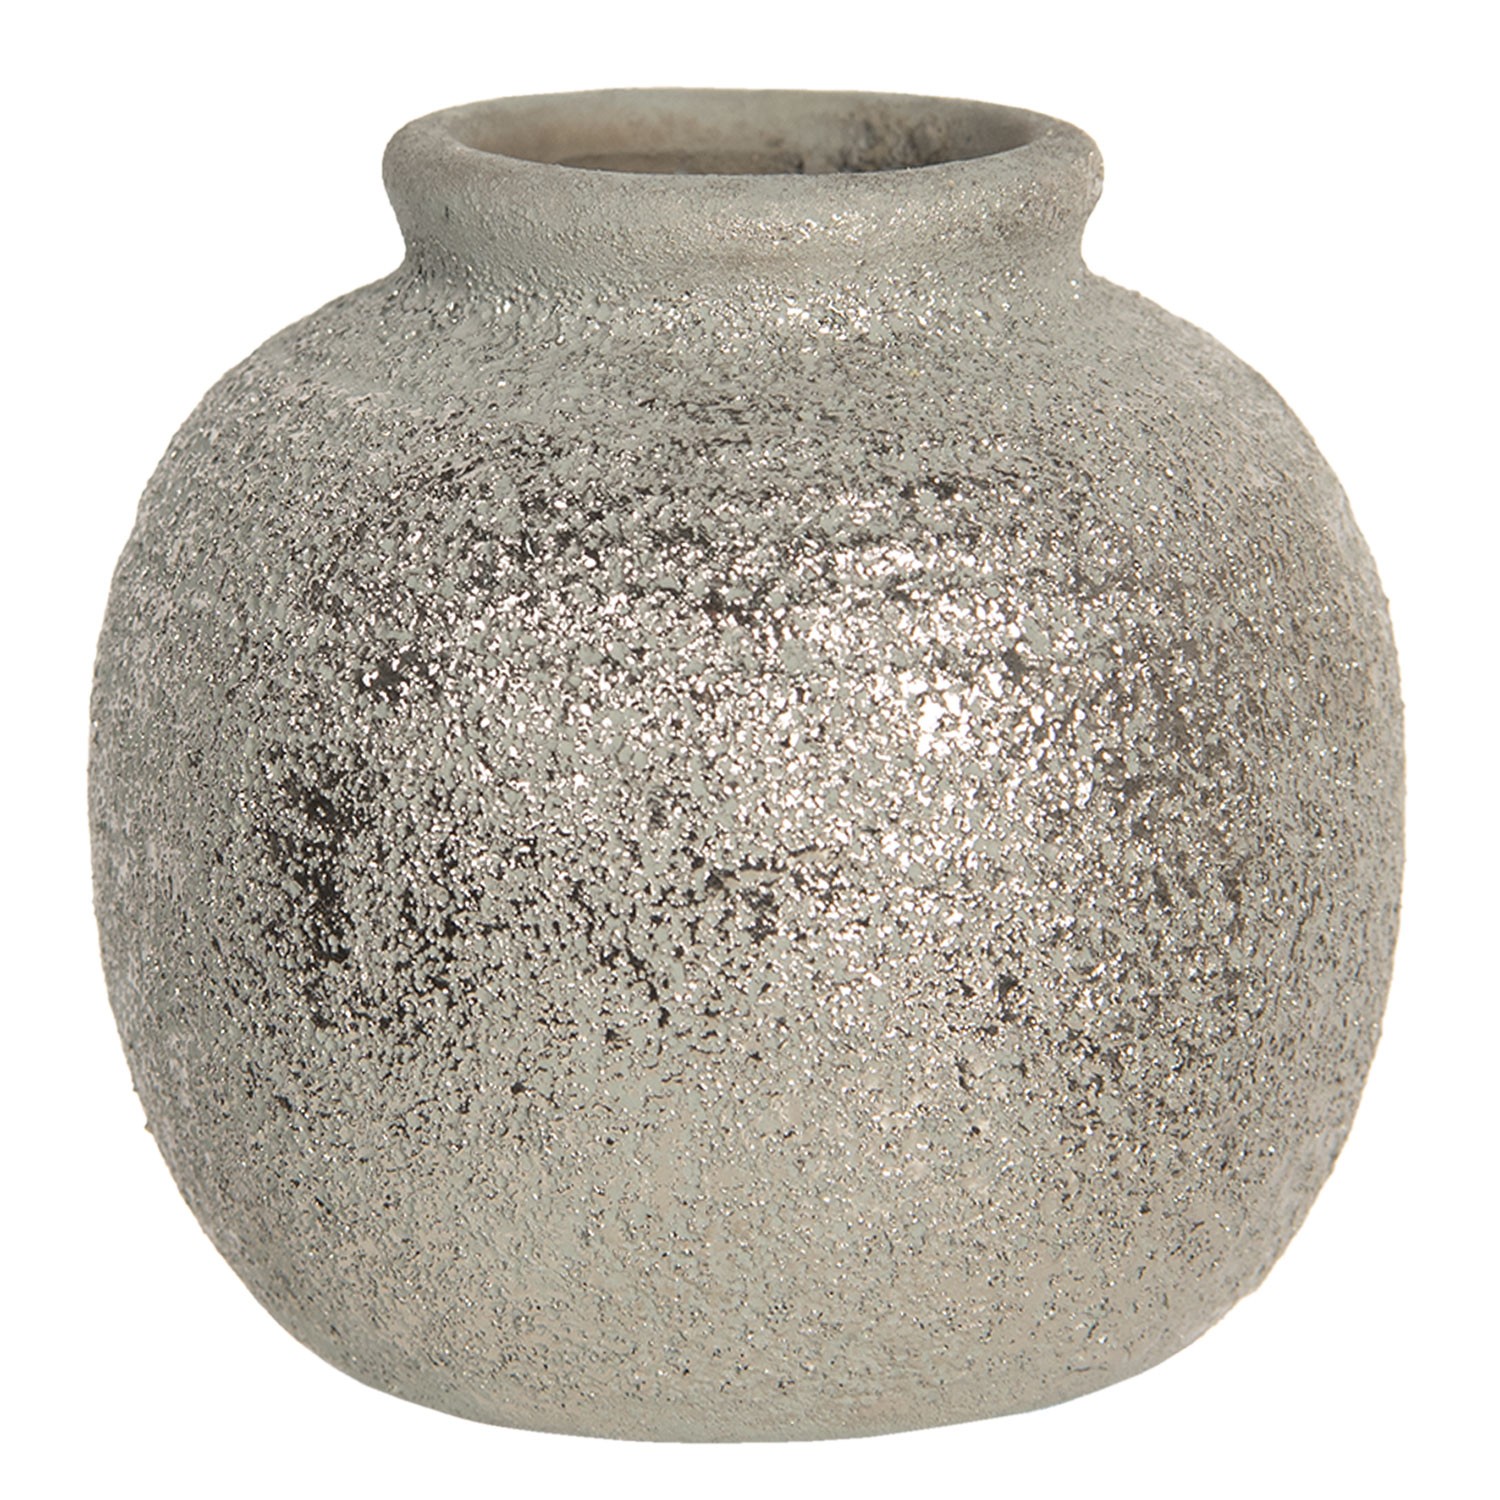 Šedivá váza Kelly s patinou a odřeninami - Ø 8*8 cm Clayre & Eef